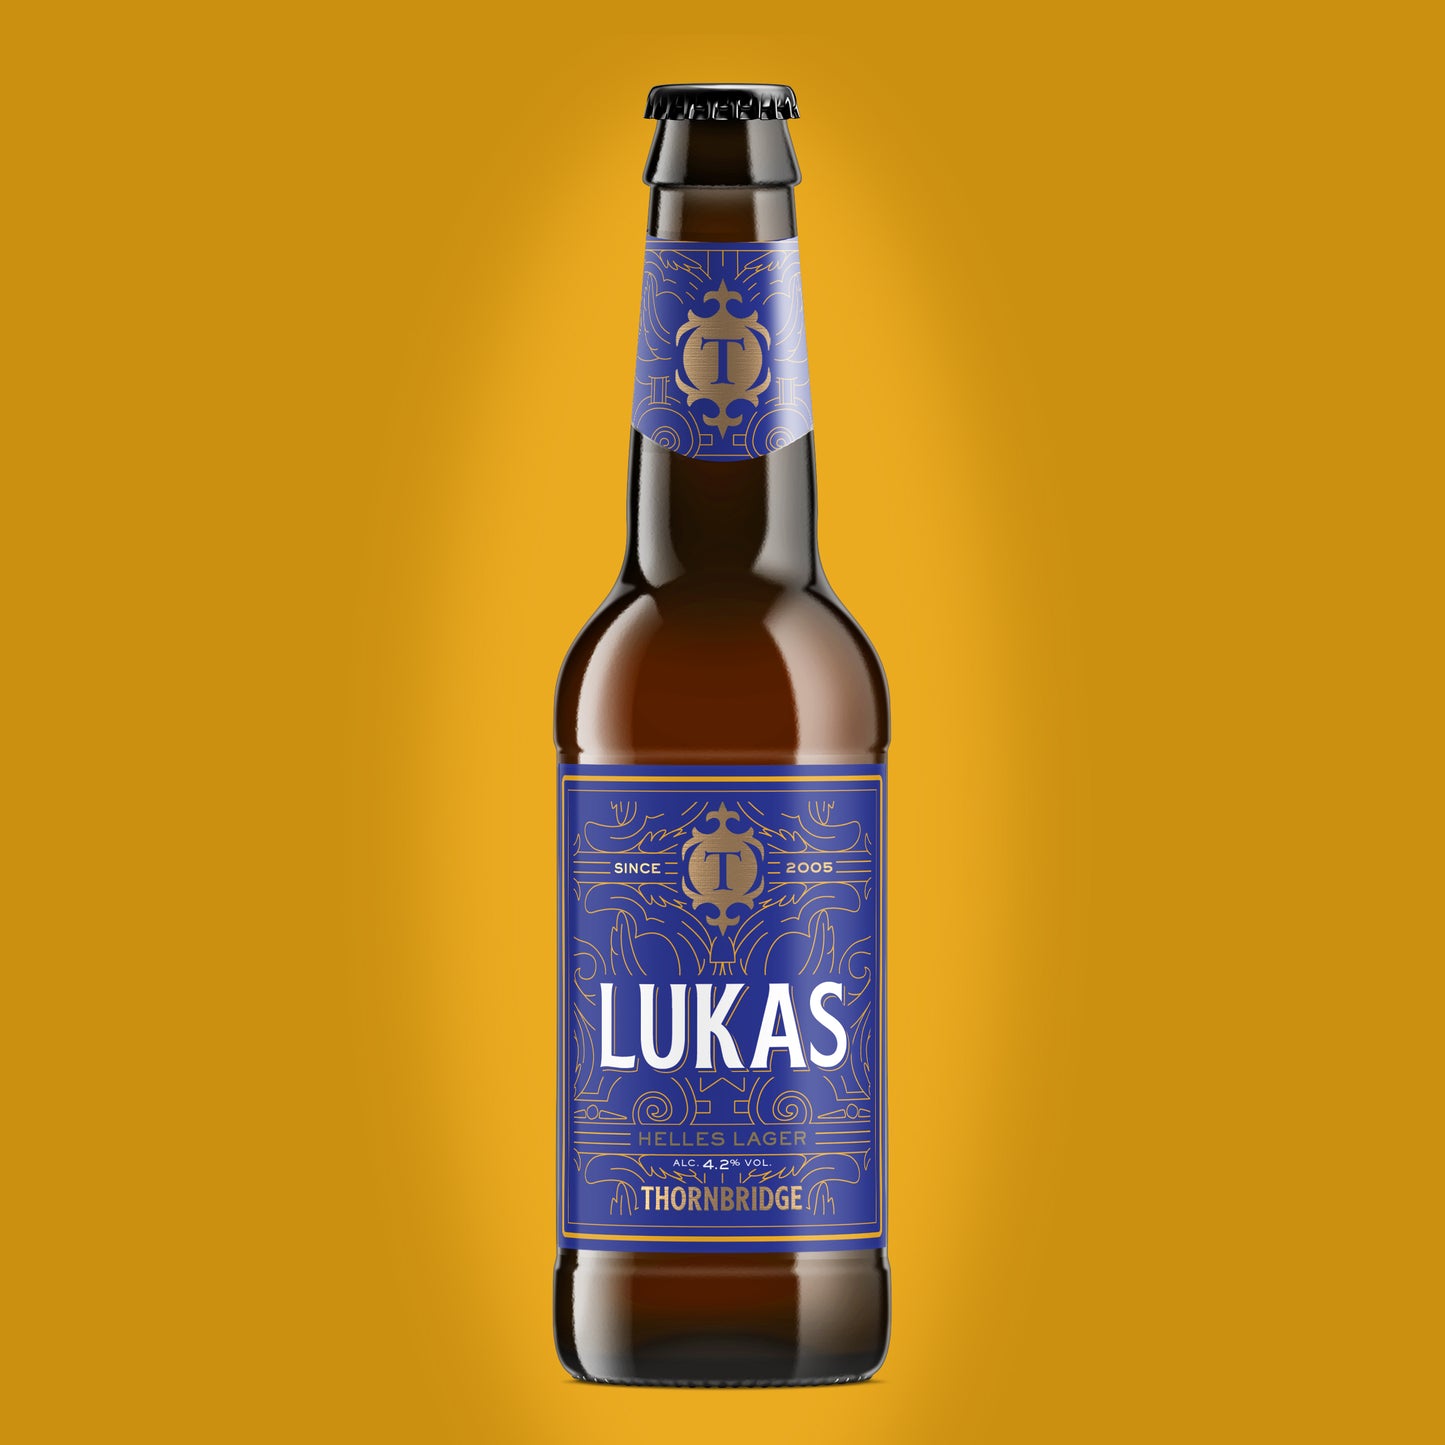 Lukas Bottle, 4.2% Helles Lager (Gluten Free) Beer - Single Bottle Thornbridge